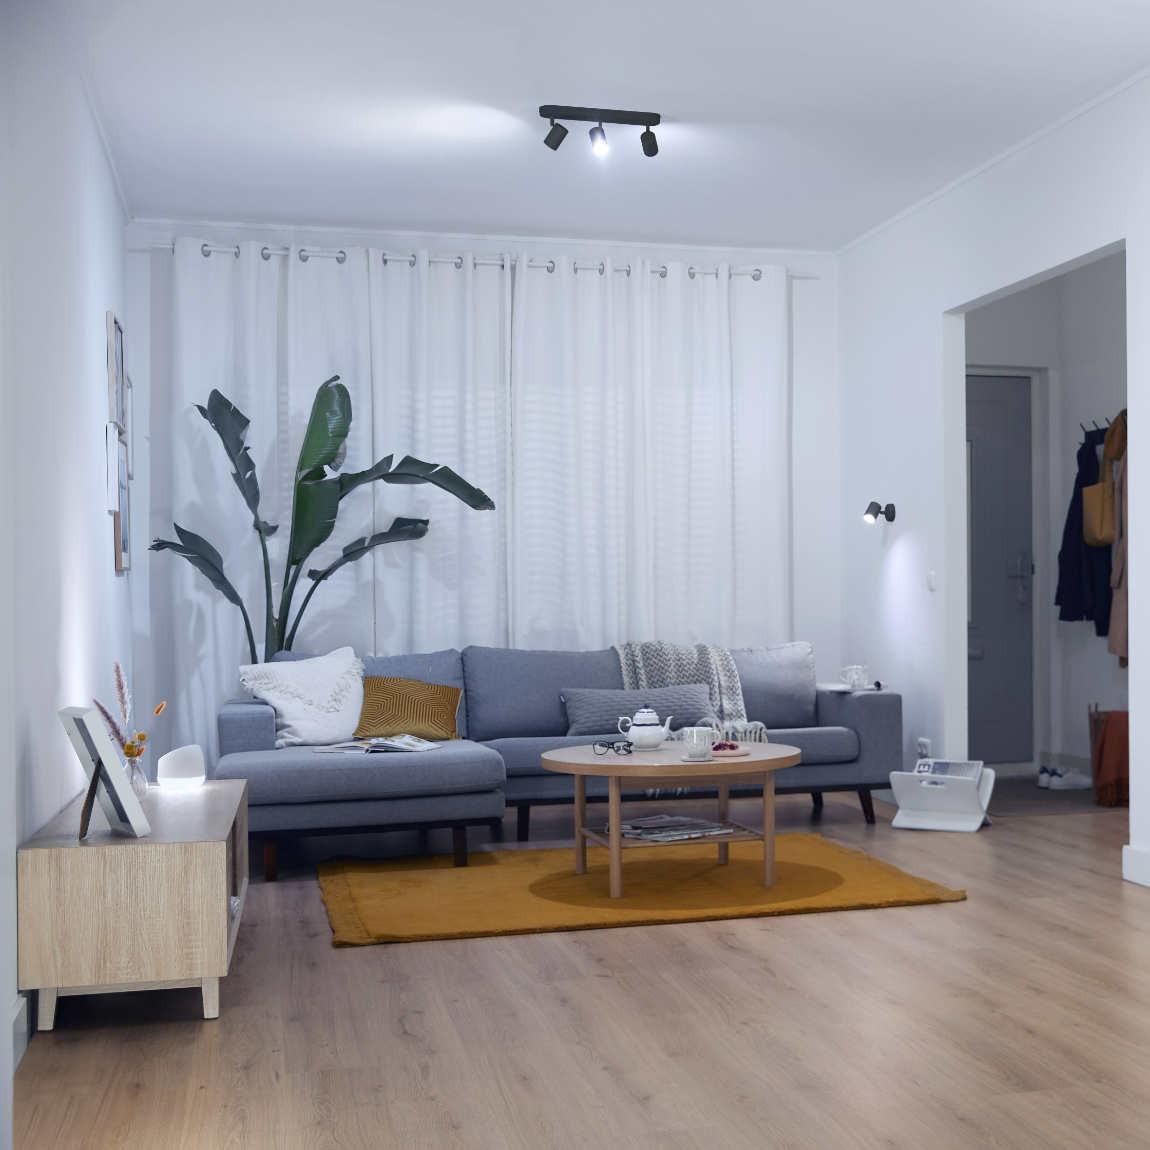 WiZ IMAGEO Spots Deckenleuchte Tunable 3x 5W Weiß - schwarz_Wohnzimmer kaltweiß